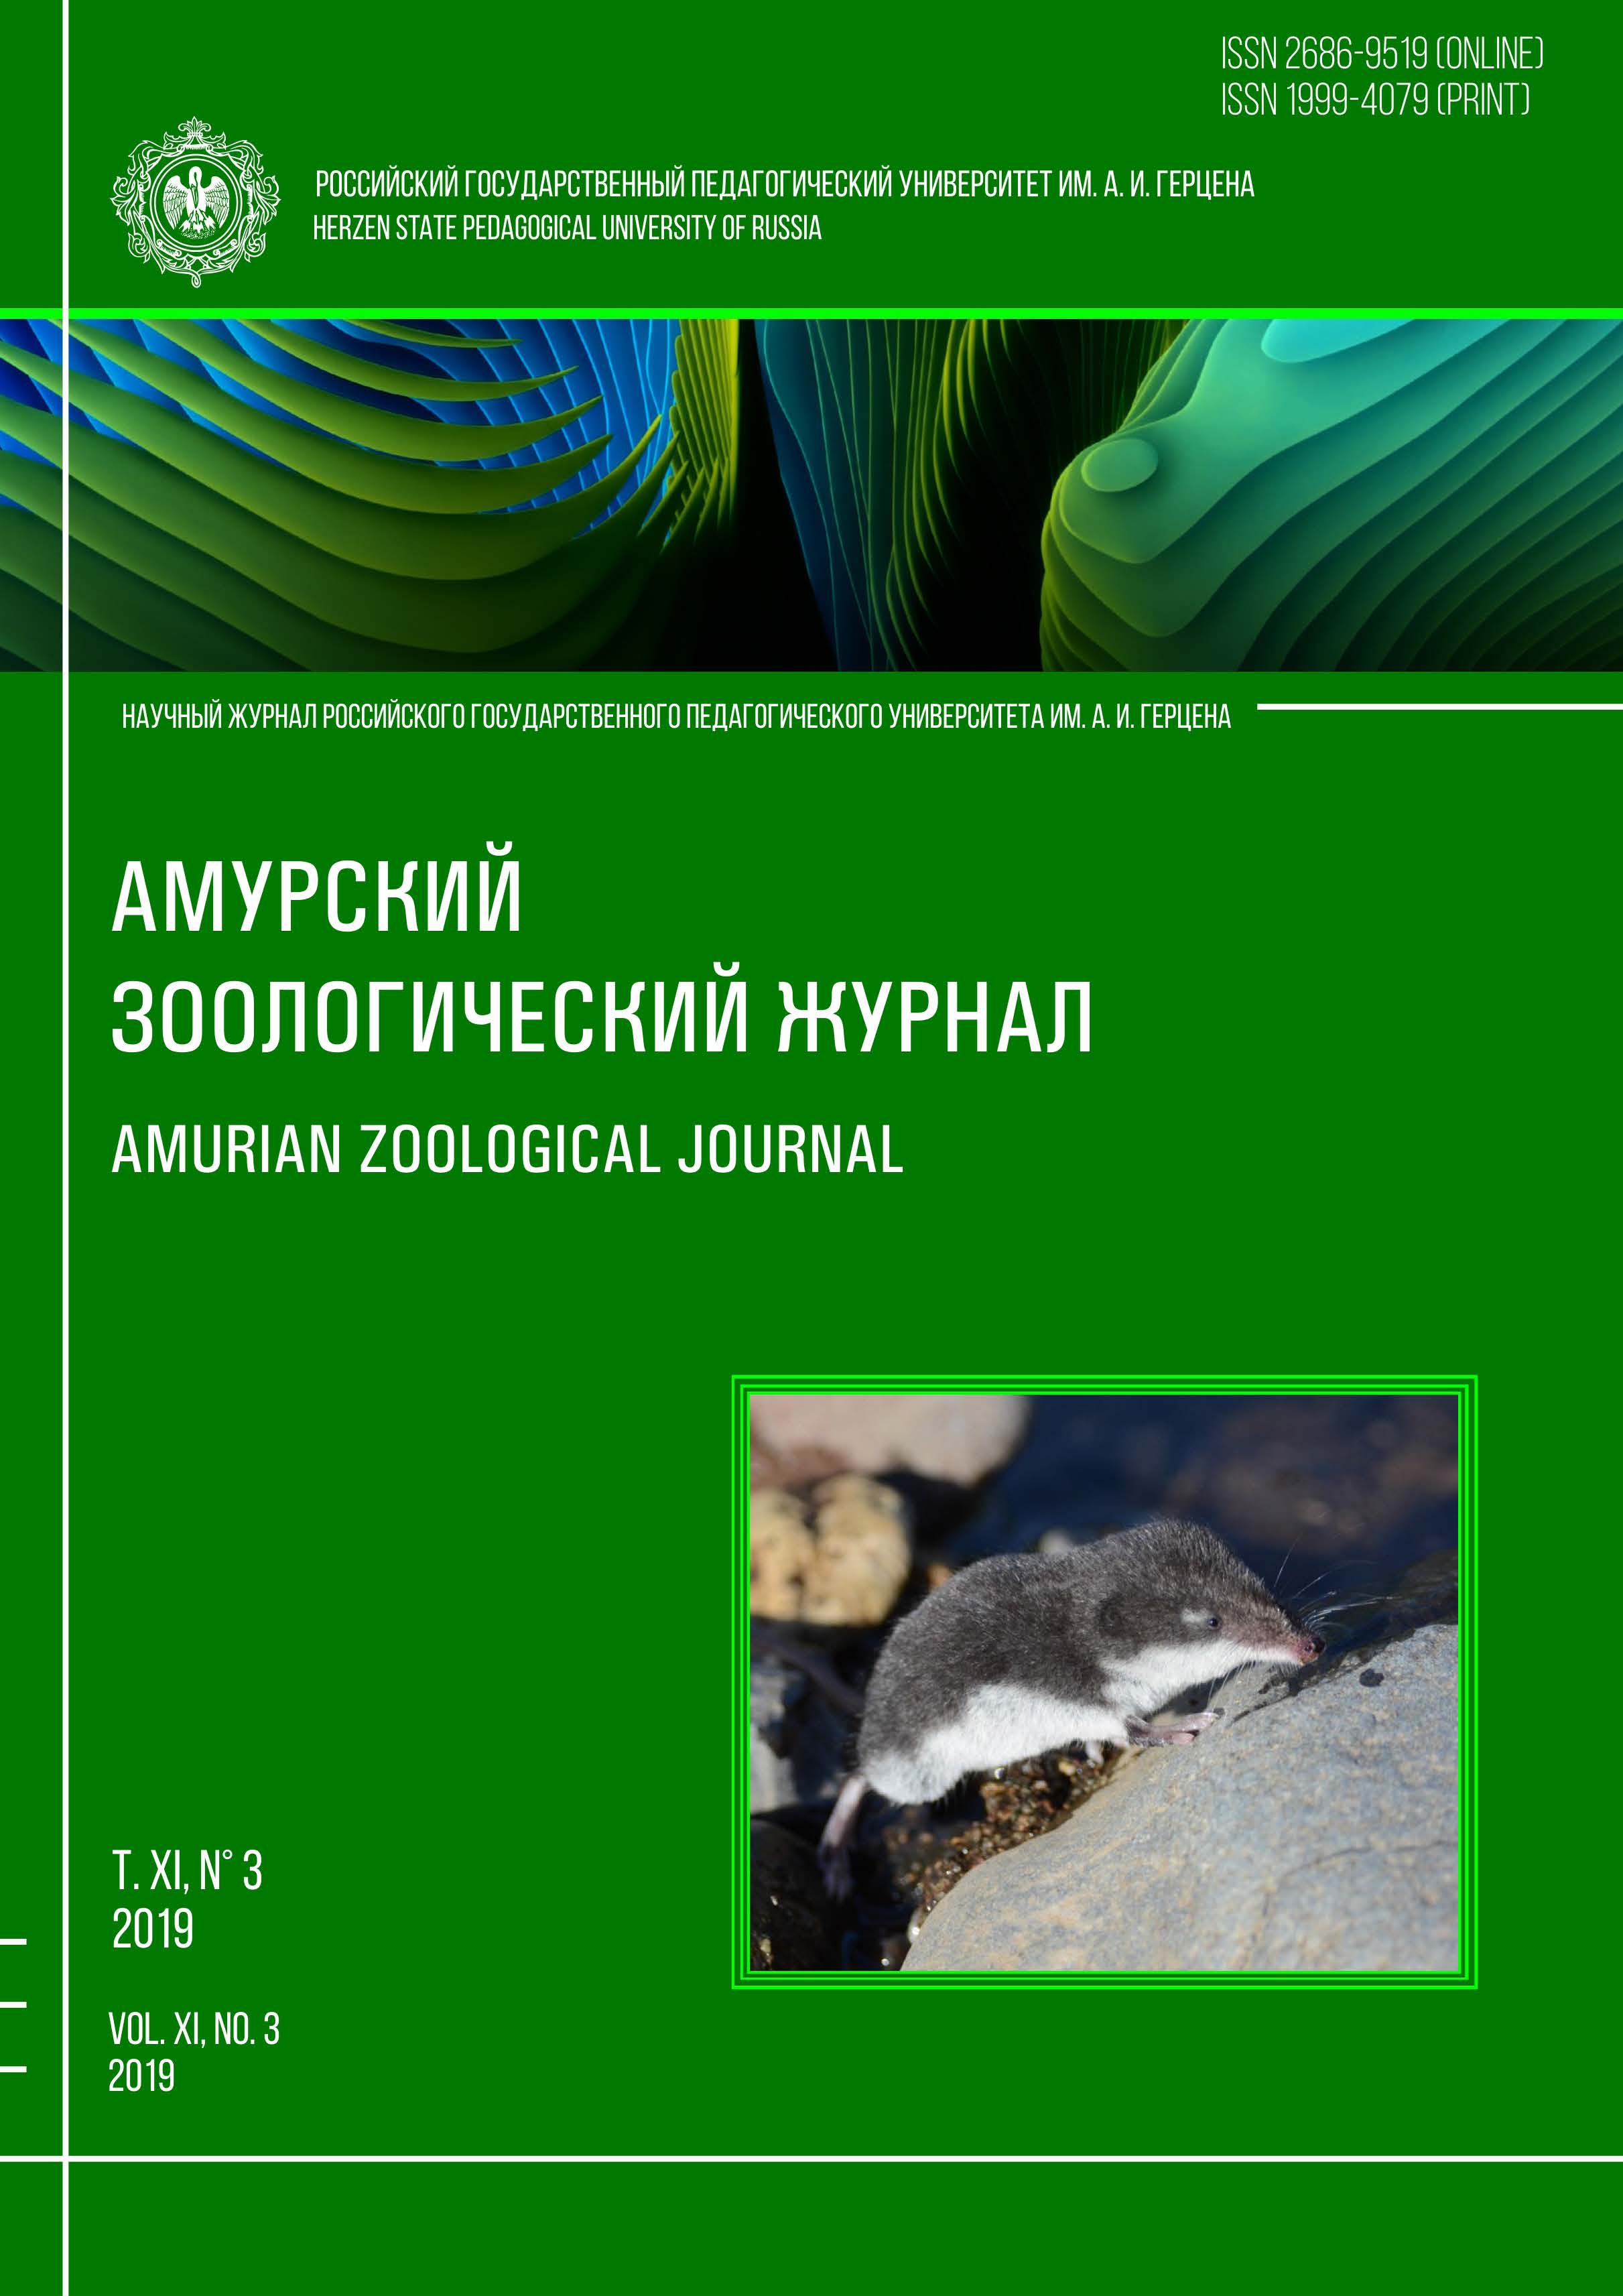 Обложка издания "Амурский зоологический журнал" (т. XI, № 3)